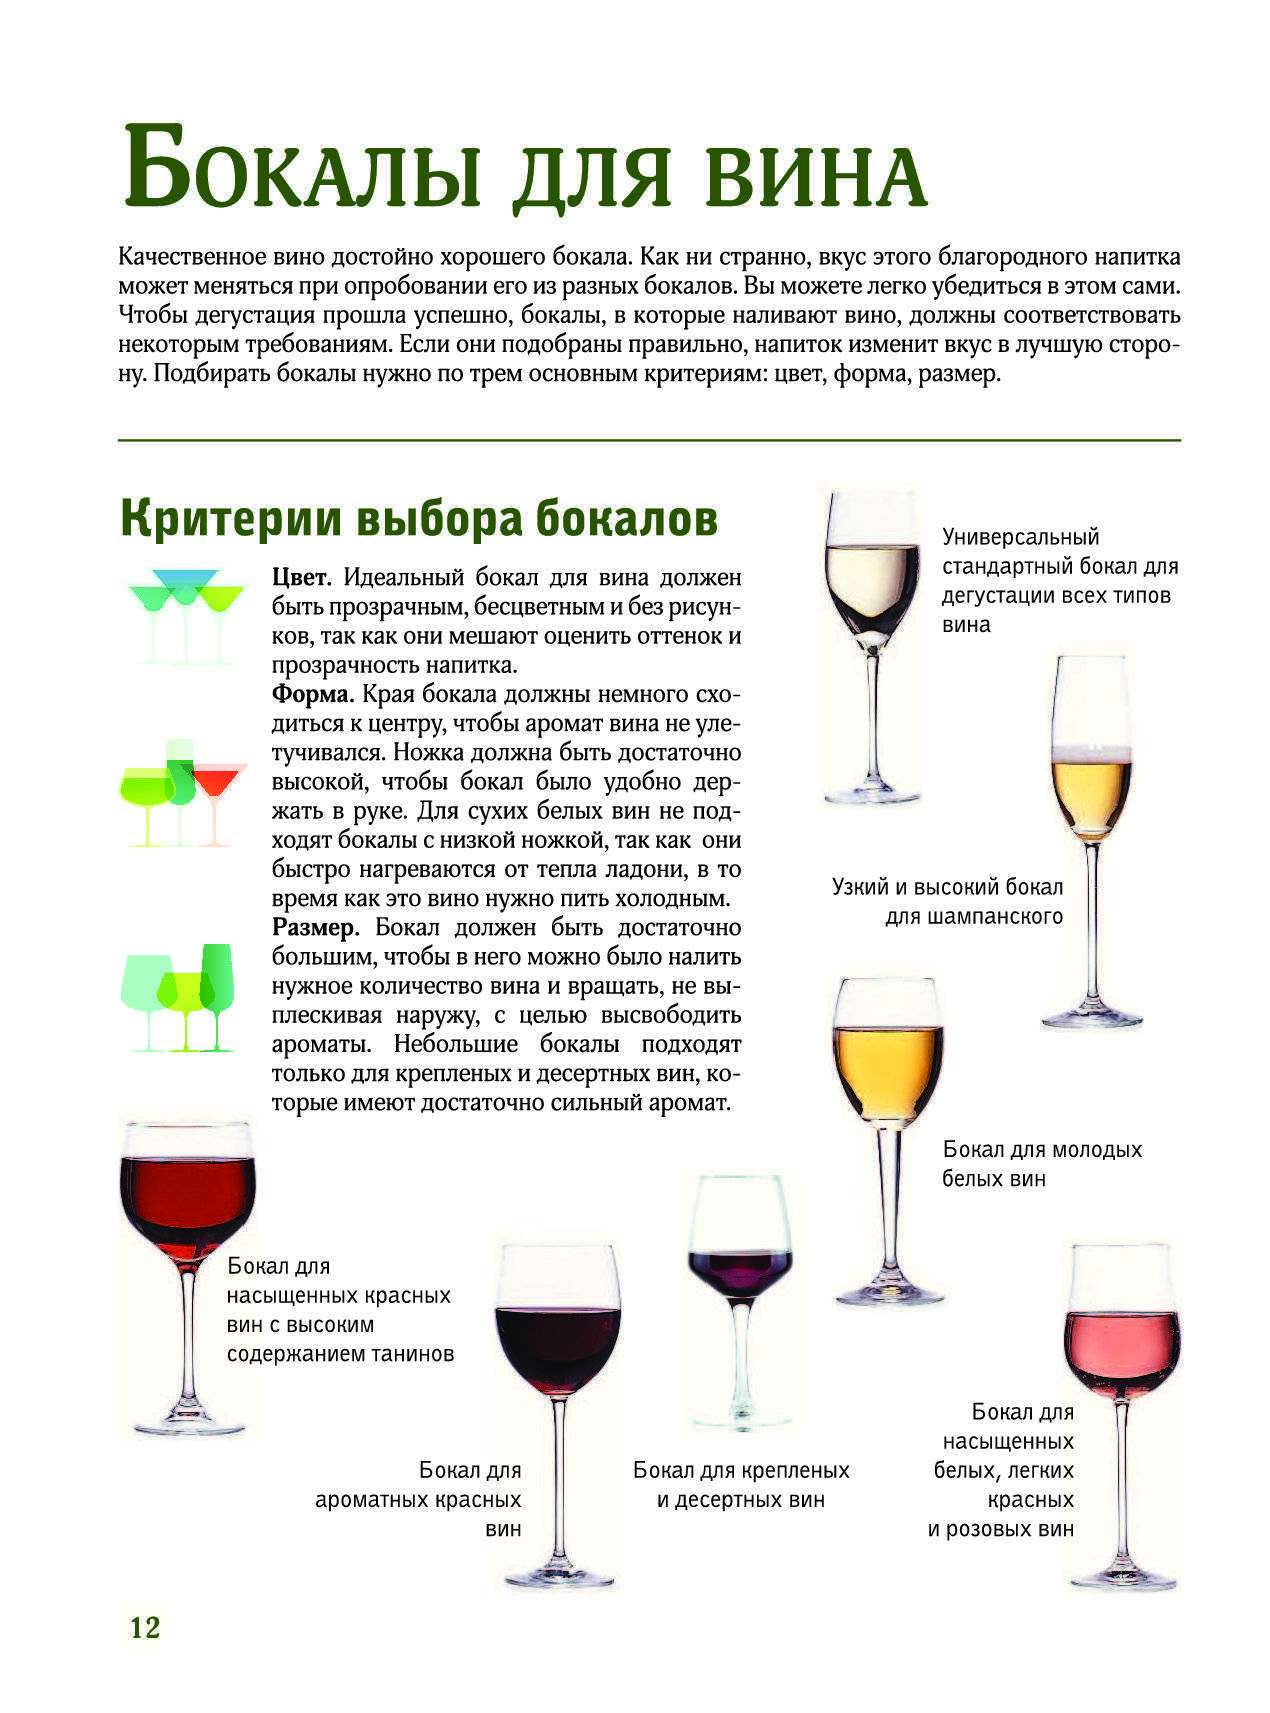 Классификация вин и рекомендуемая температура подачи